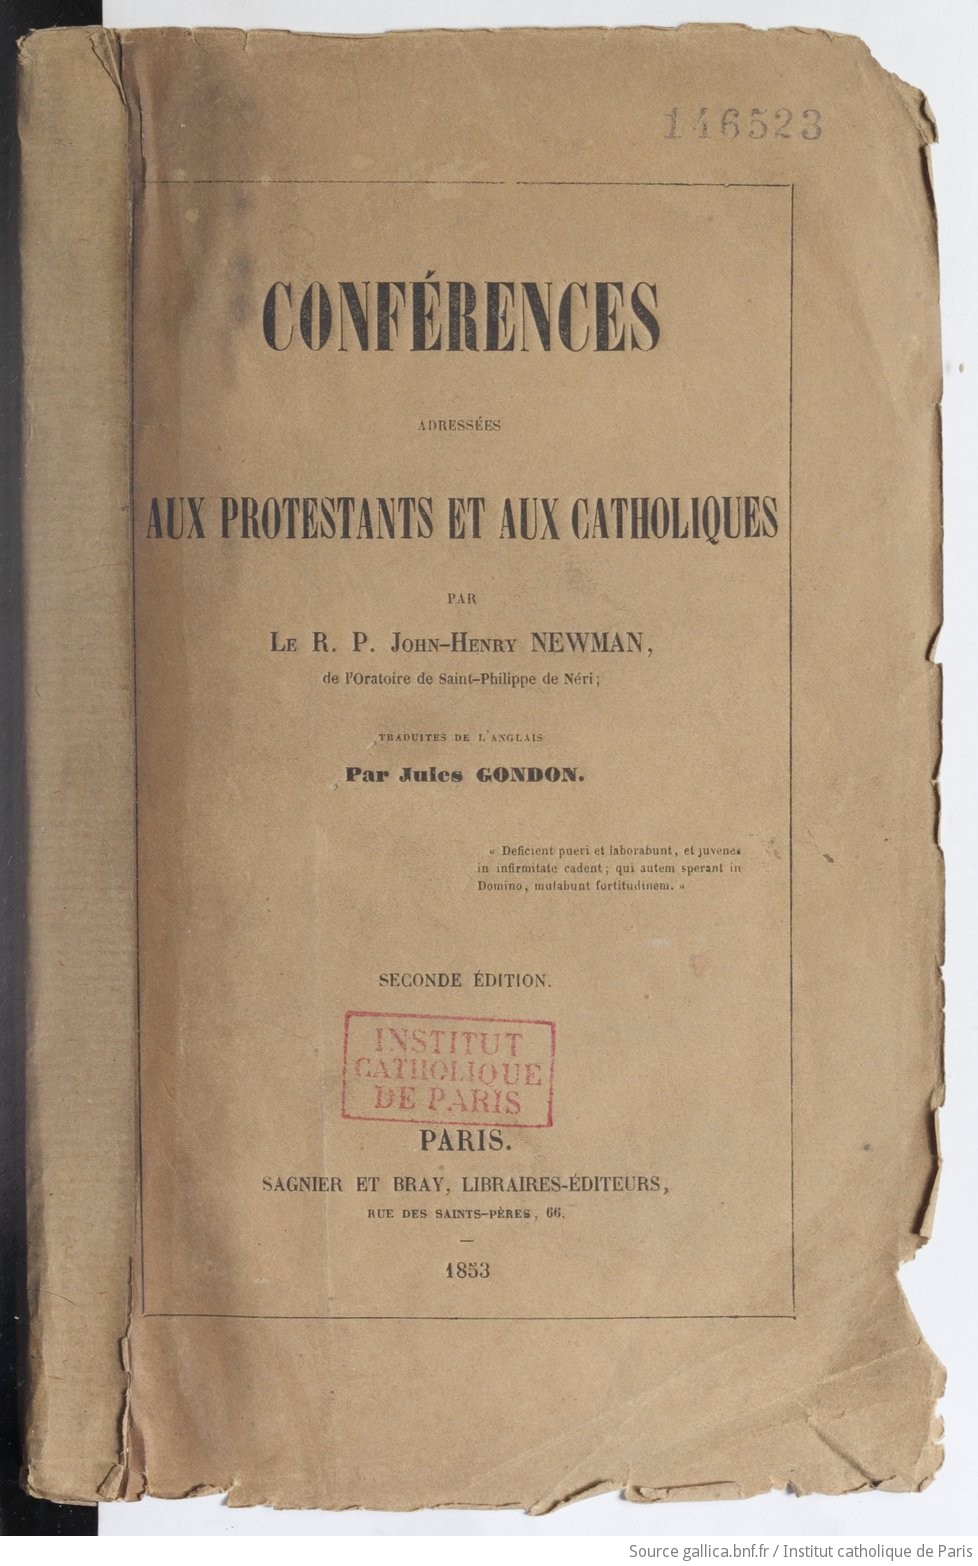 Conférences adressées aux protestants et aux catholiques, par J. H. Newman,... traduites de l'anglais avec approbation de l'auteur, par Jules Gondon